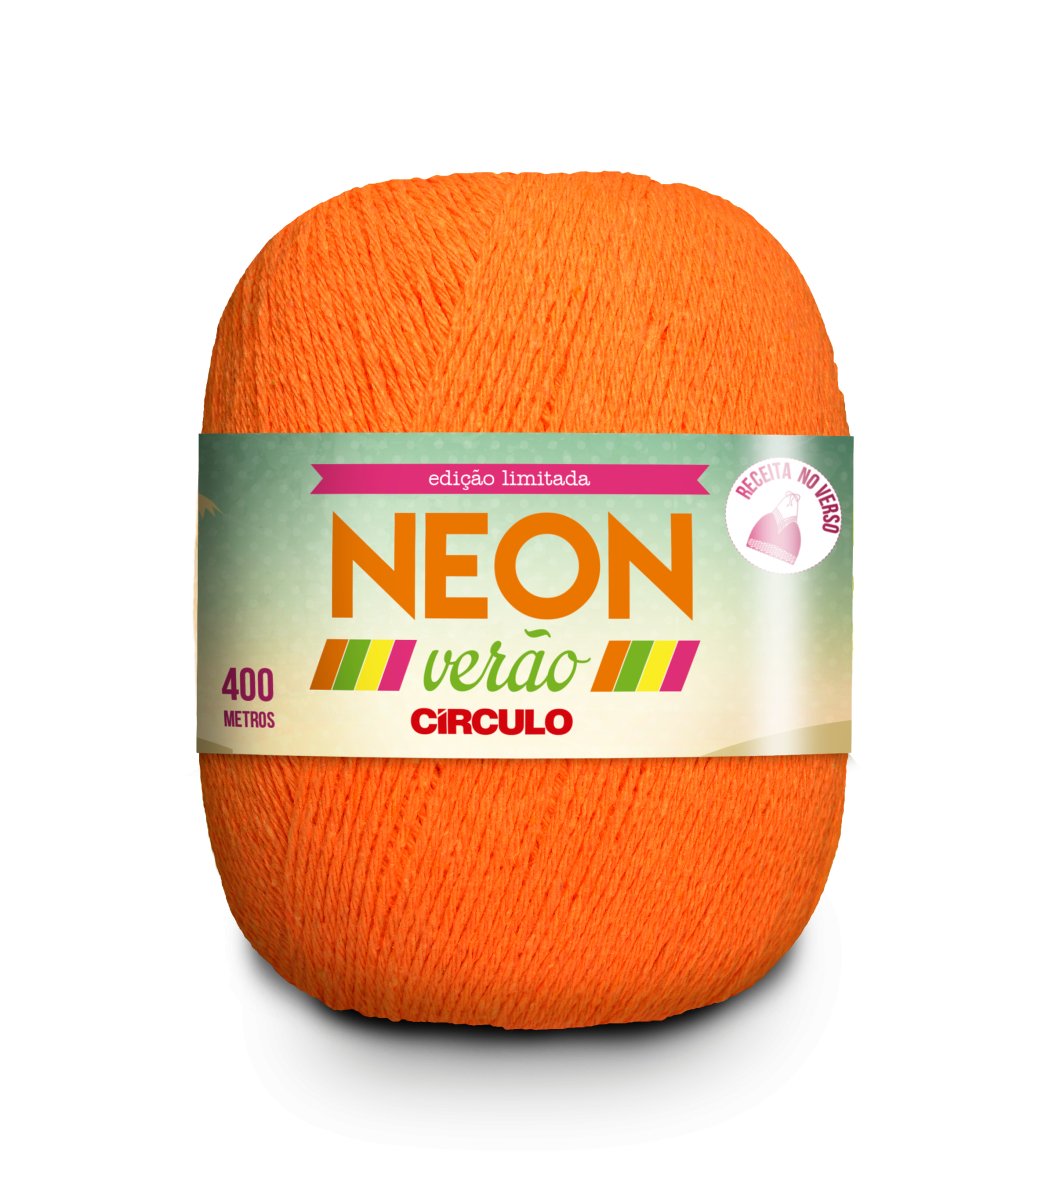 Filato Circulo NEON VERAO 50% cotone 50% poliestere 406 m - 150 g, colore arancione neon (337005-4270)